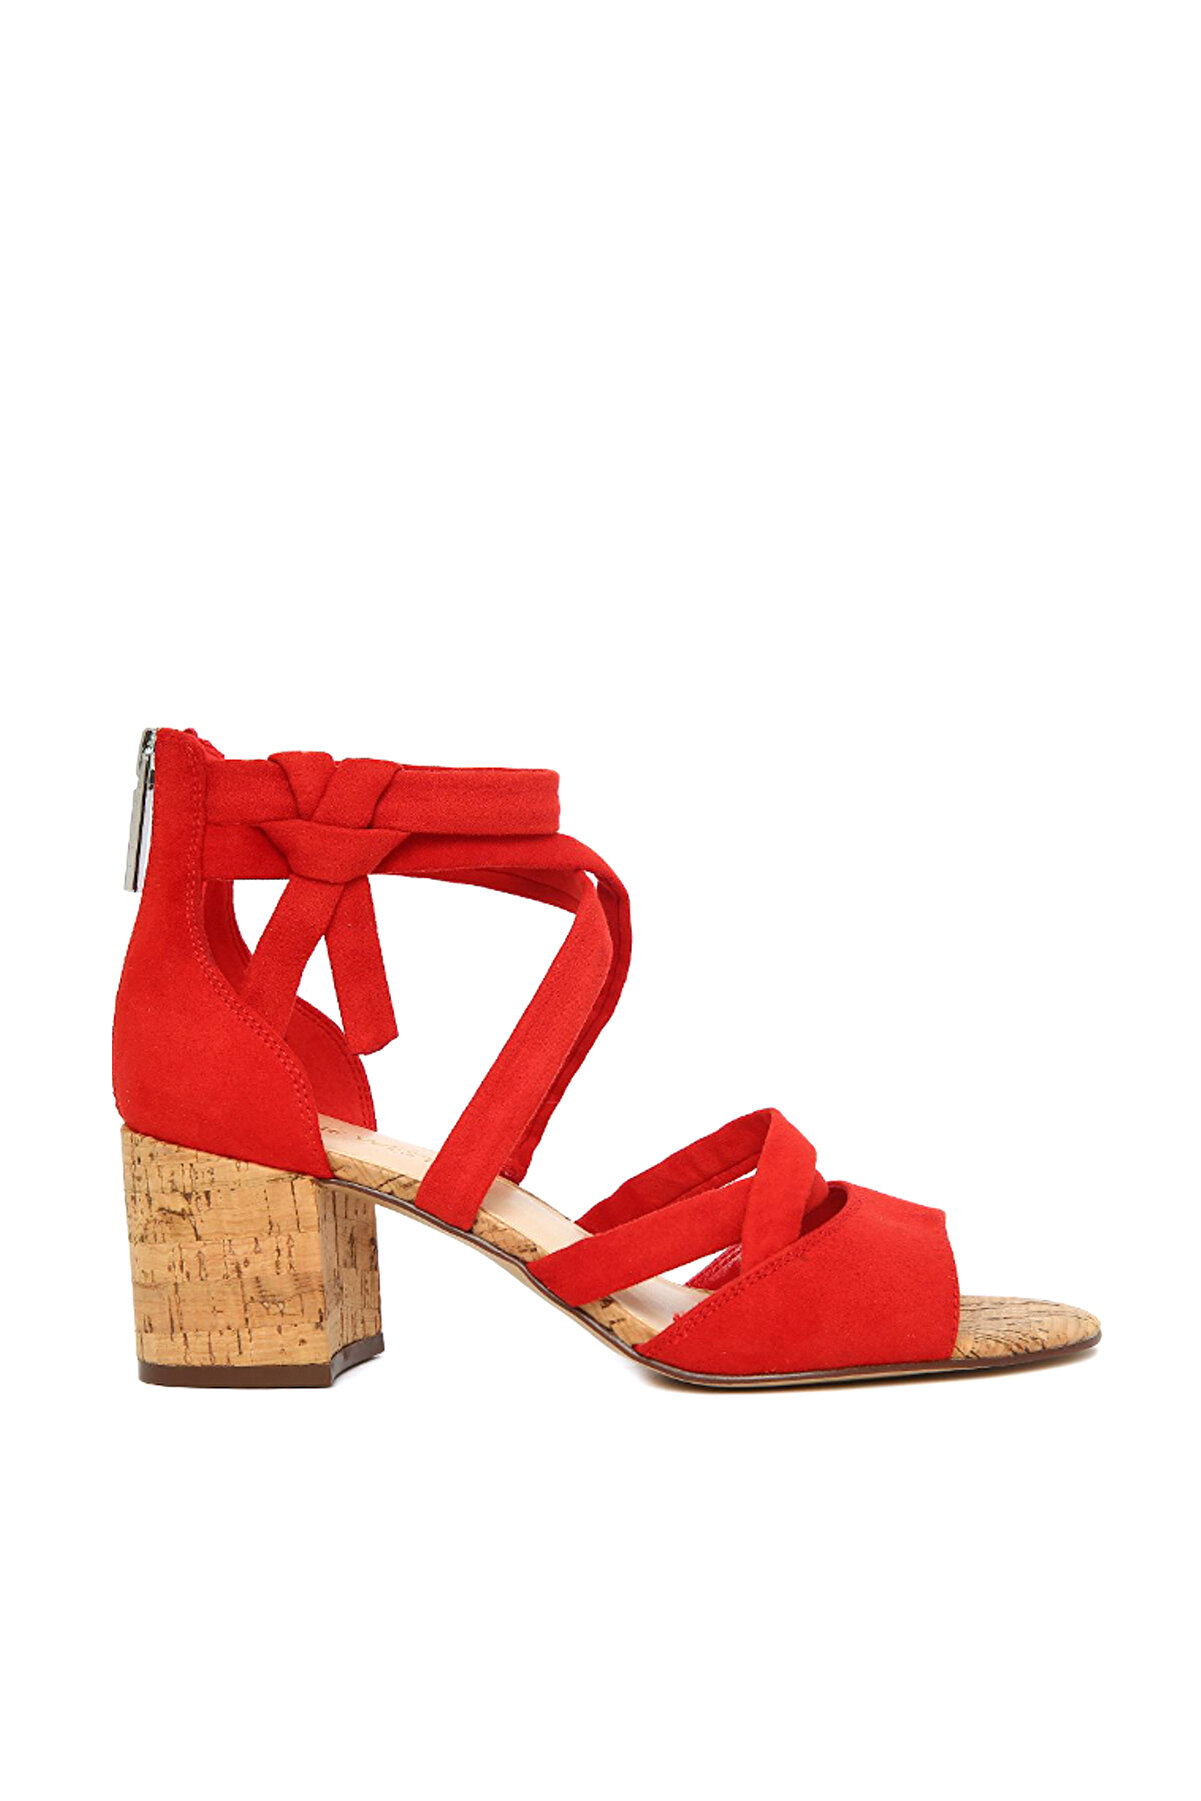 Nine West Kırmızı Kadın Topuklu Ayakkabı 25026505-3MG